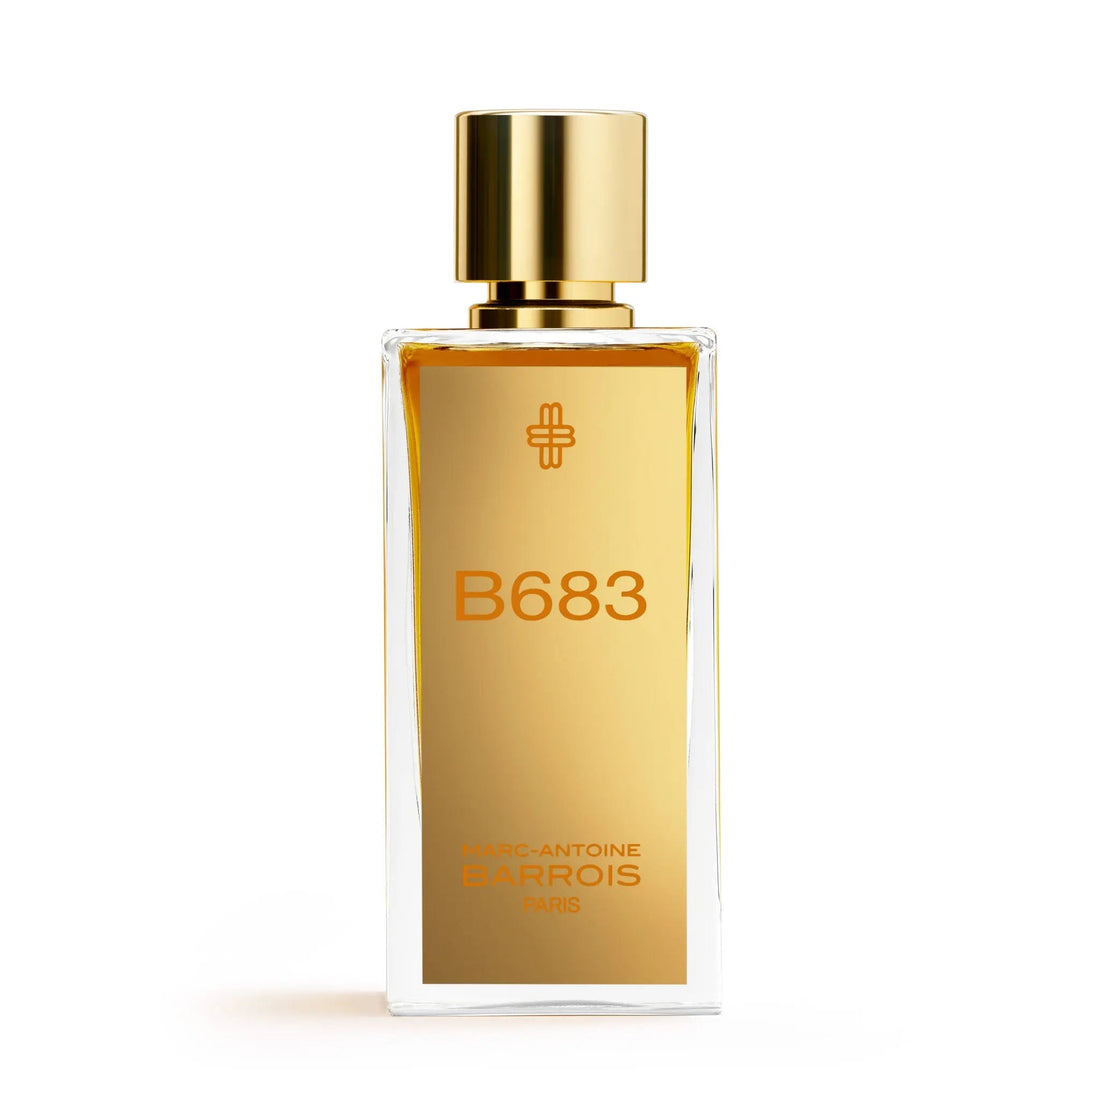 Barrois B683 eau de parfum - 30 ml